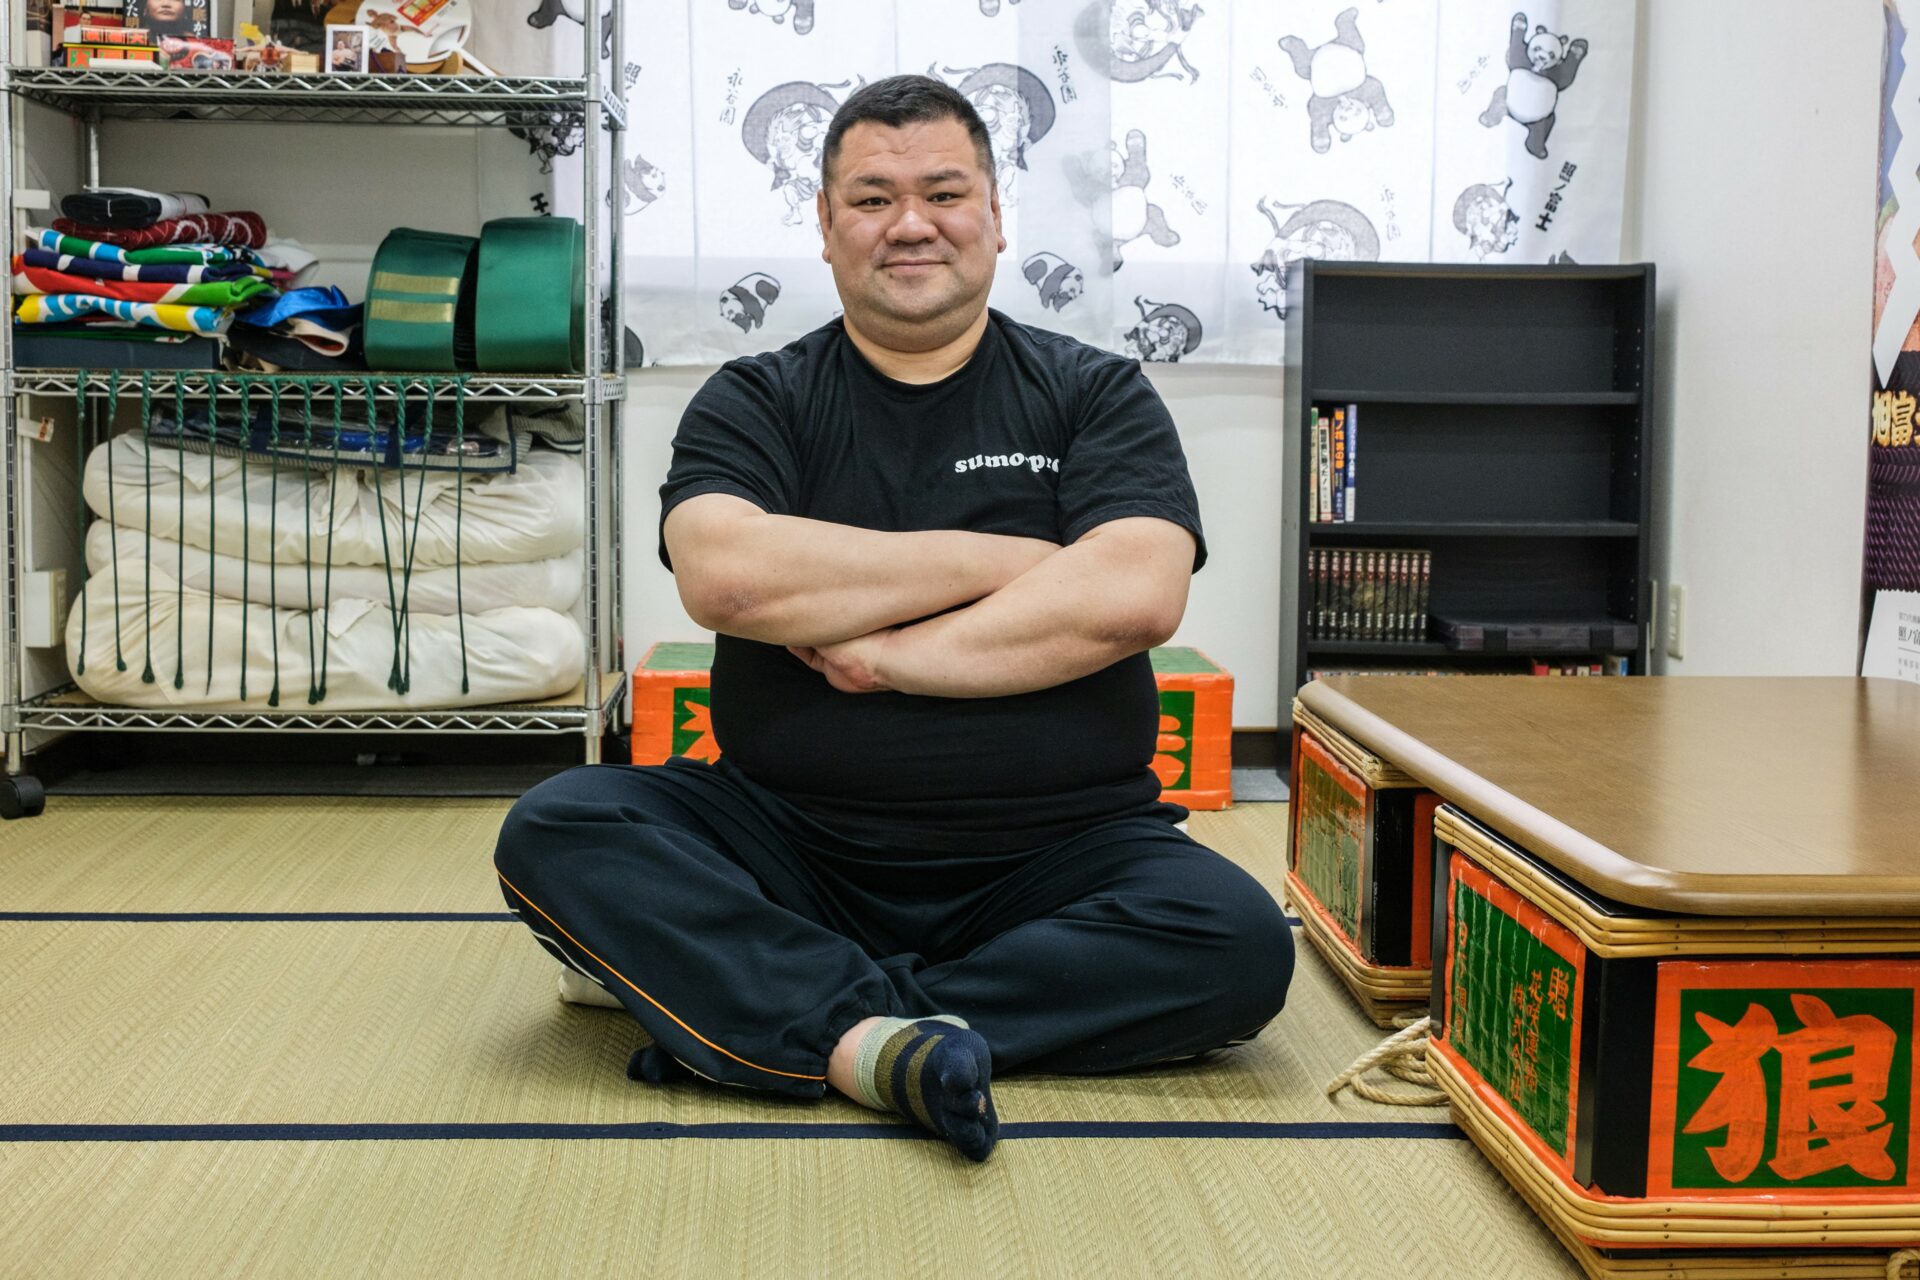 La difícil vida de los sumos en Japón